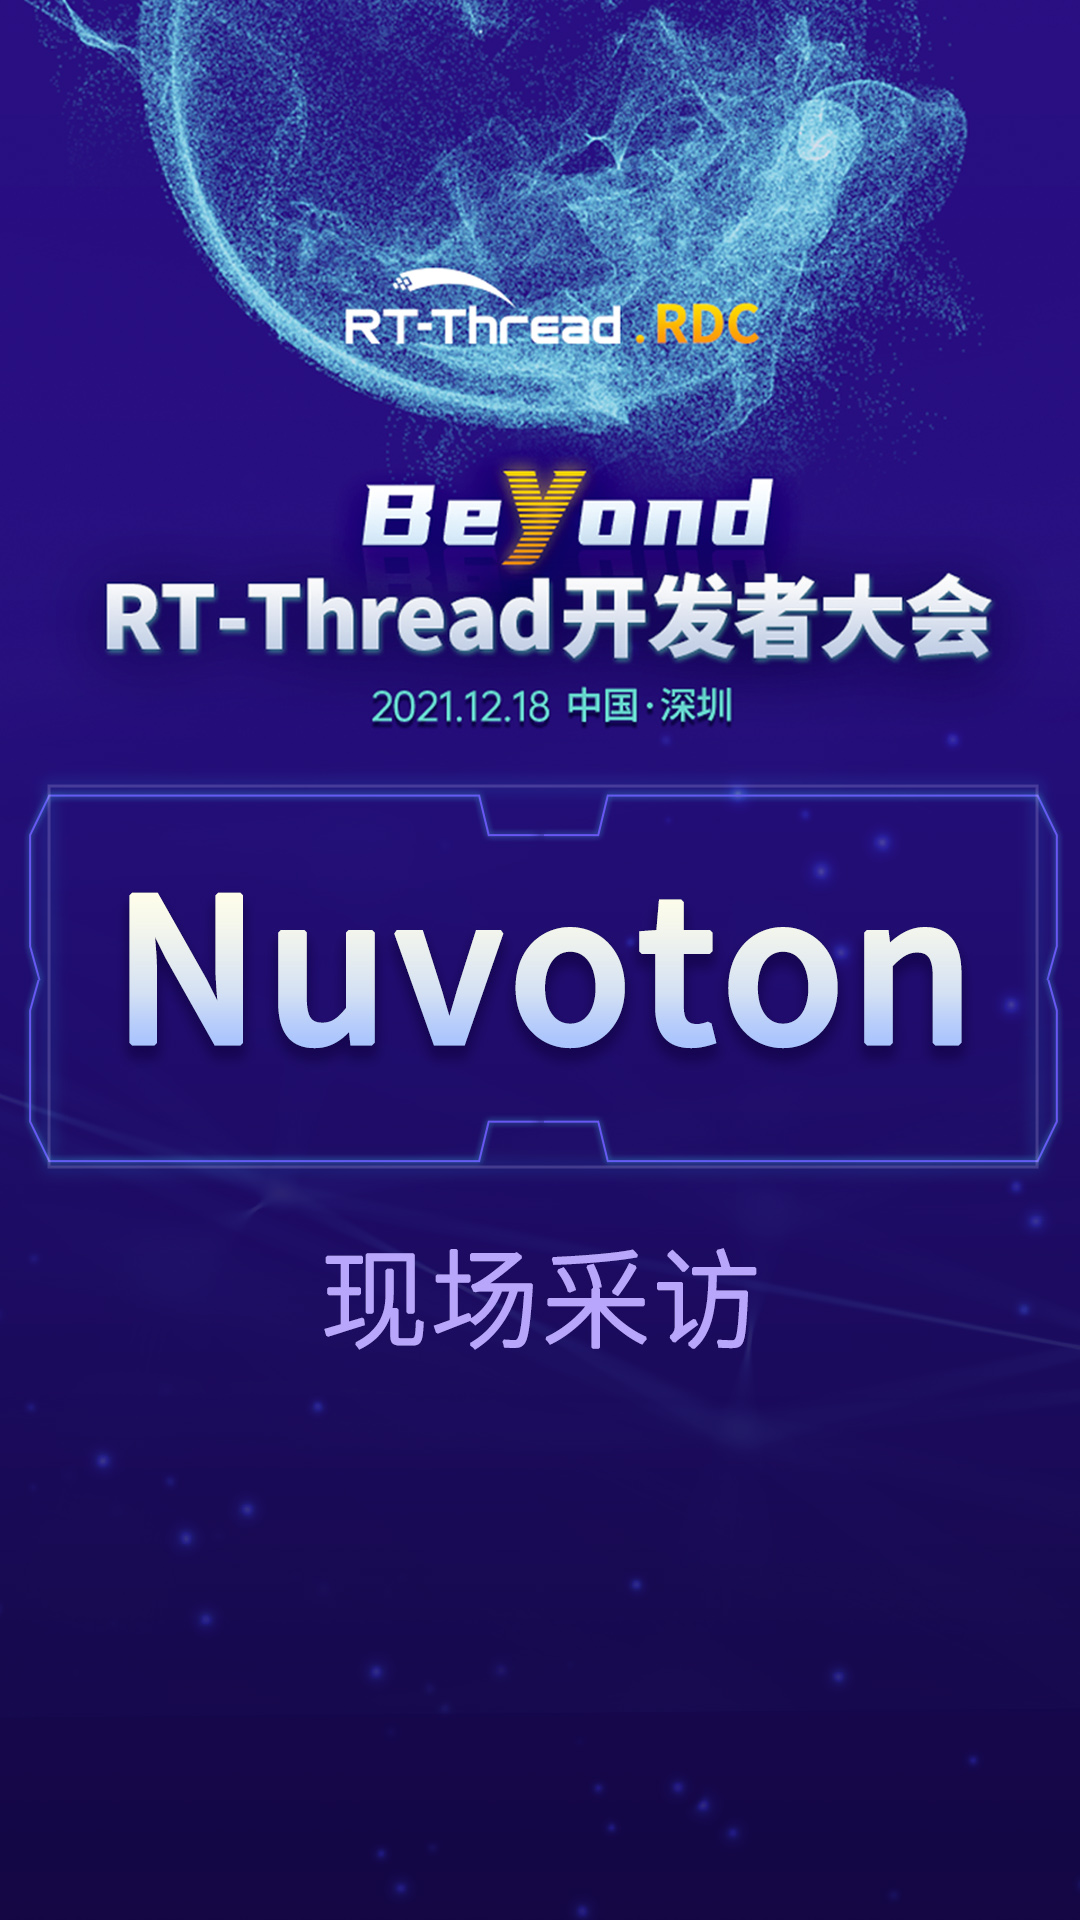 RT-Thread开发者大会-Nuvoton企业现场采访#嵌入式开发 